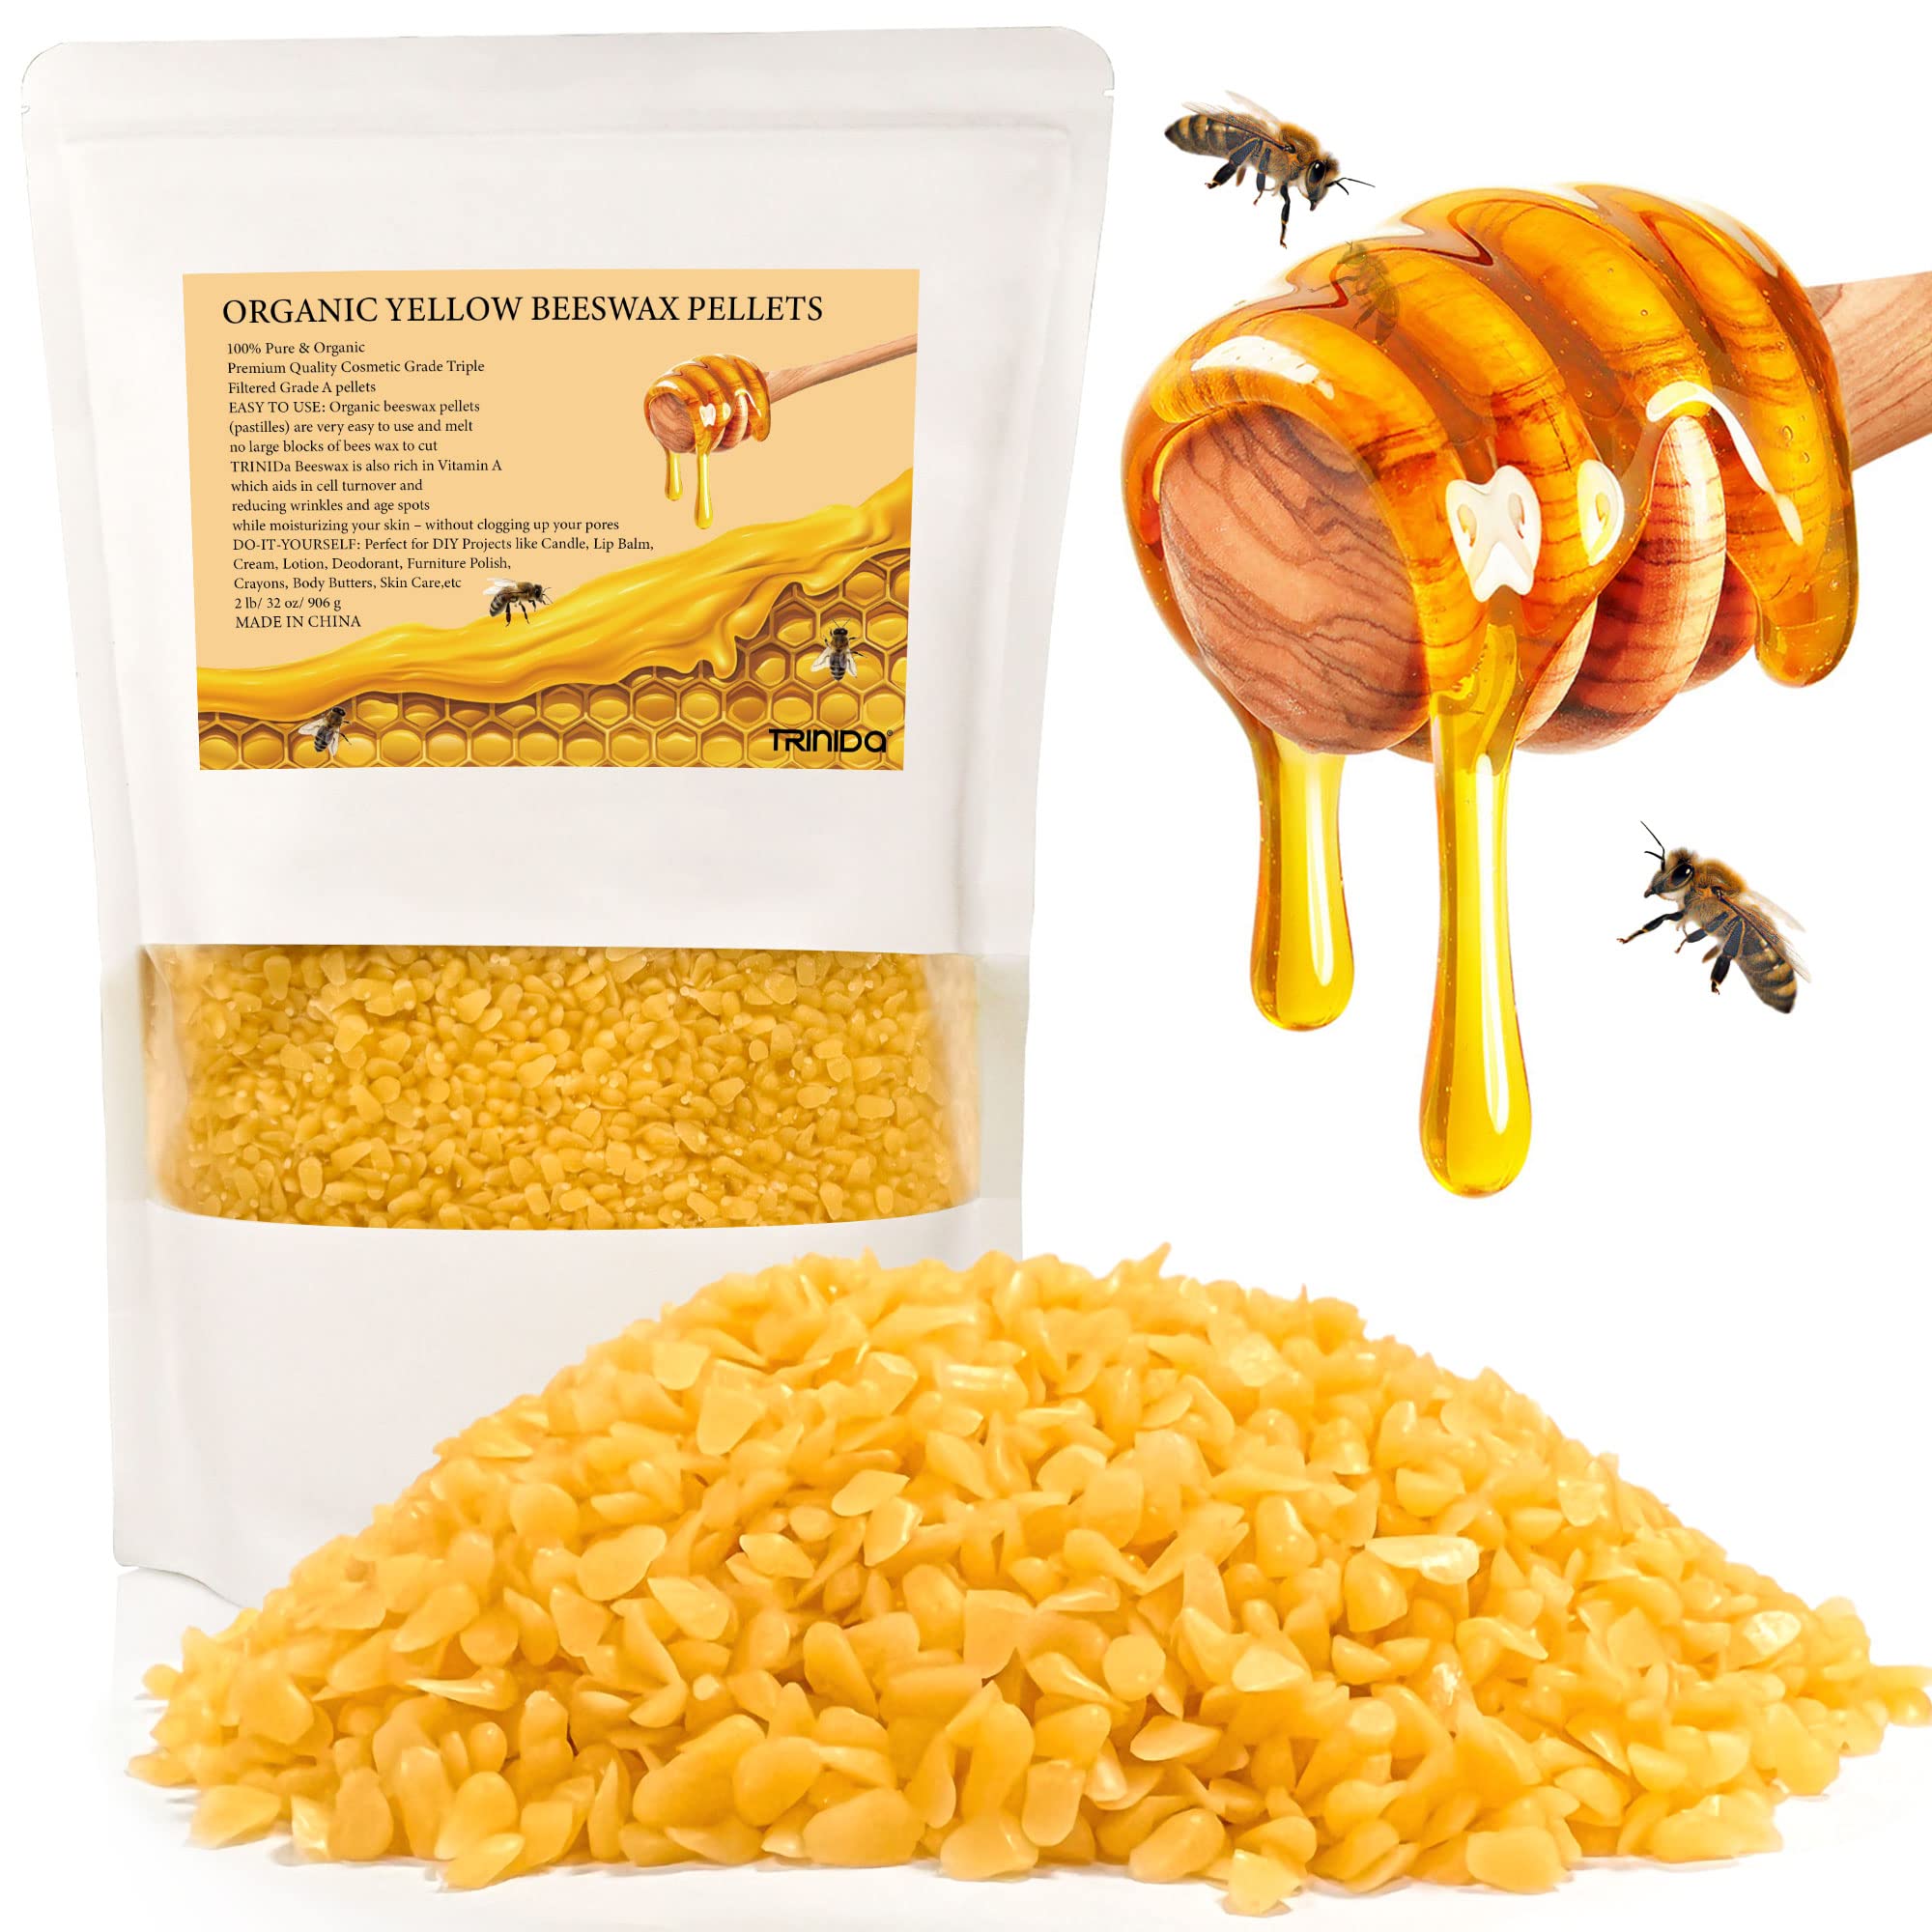 TRINIDa Beeswax Pellets 2LB(32 oz), 100% Organic Yellow Bees Wax